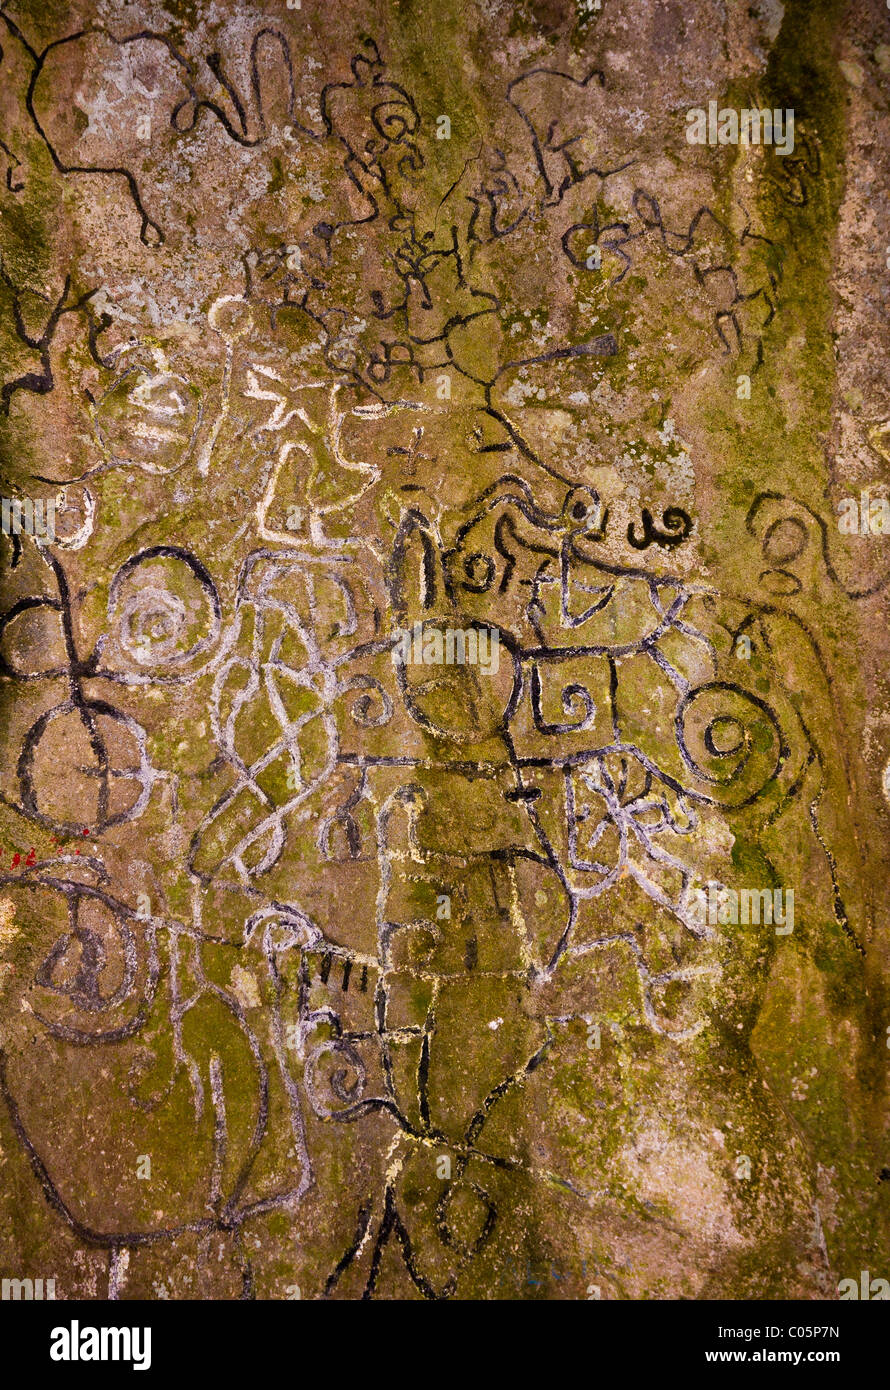 EL VALLE de Anton, PANAMA - pétroglyphes, l'art rupestre aborigène, au Sentier de la Piedra Pintada. Banque D'Images